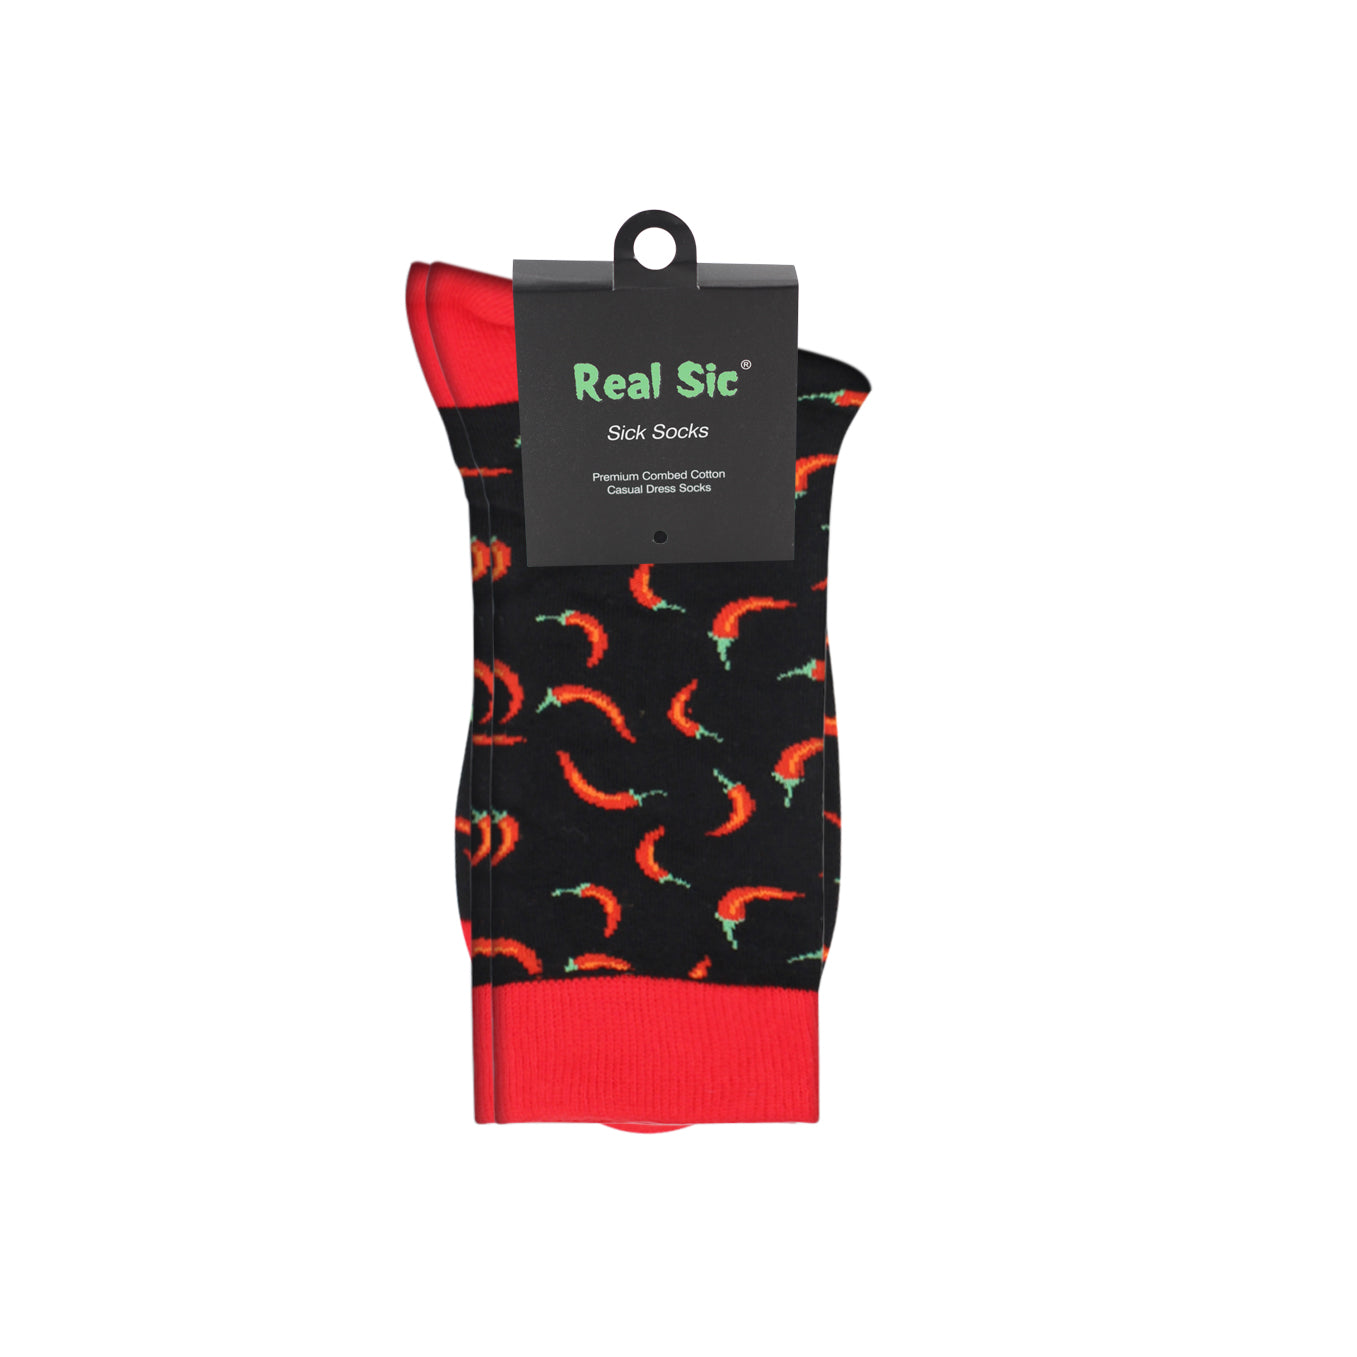 Sick Socks - Chili / Pepper – International Food Dress Socks